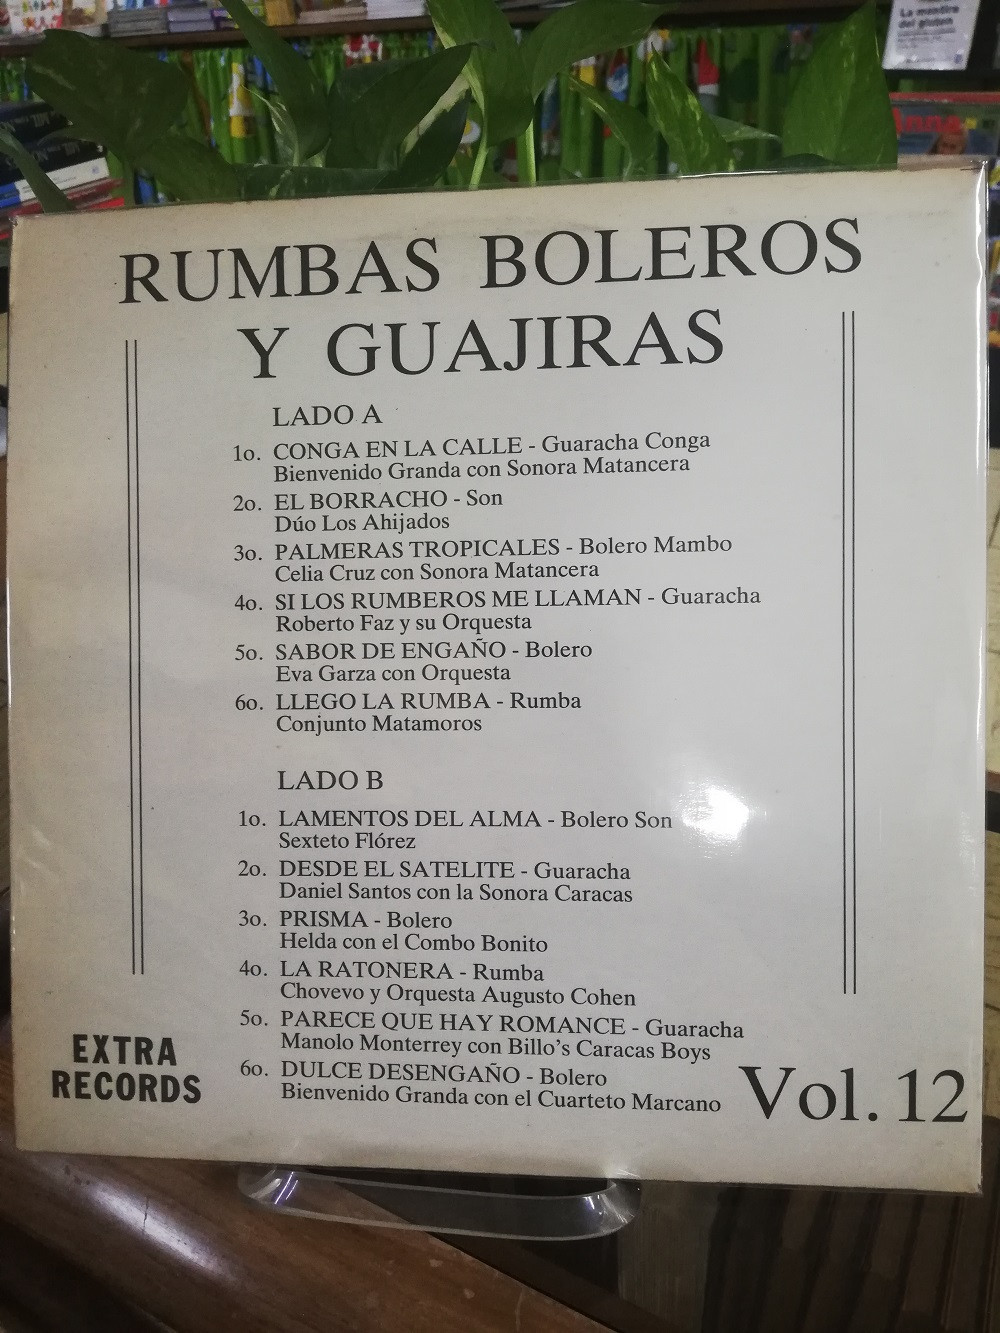 Imagen LP RUMBAS, BOLEROS Y GUAJIRAS VOL. 12 2